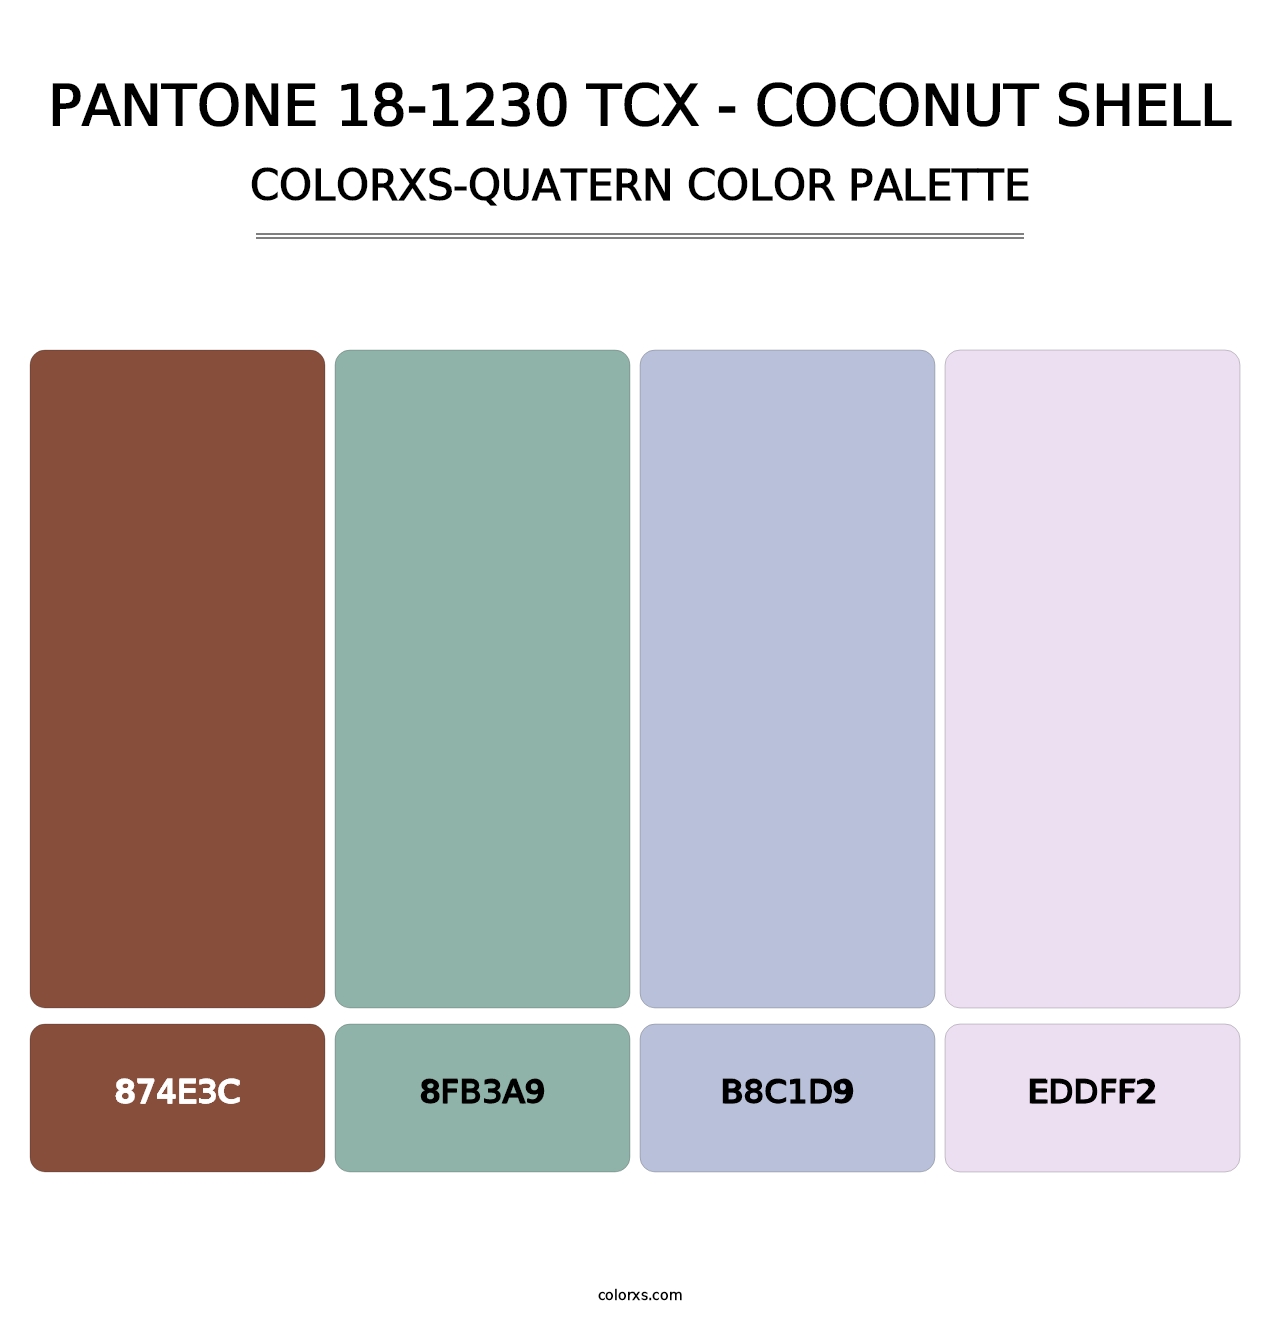 PANTONE 18-1230 TCX - Coconut Shell - Colorxs Quatern Palette